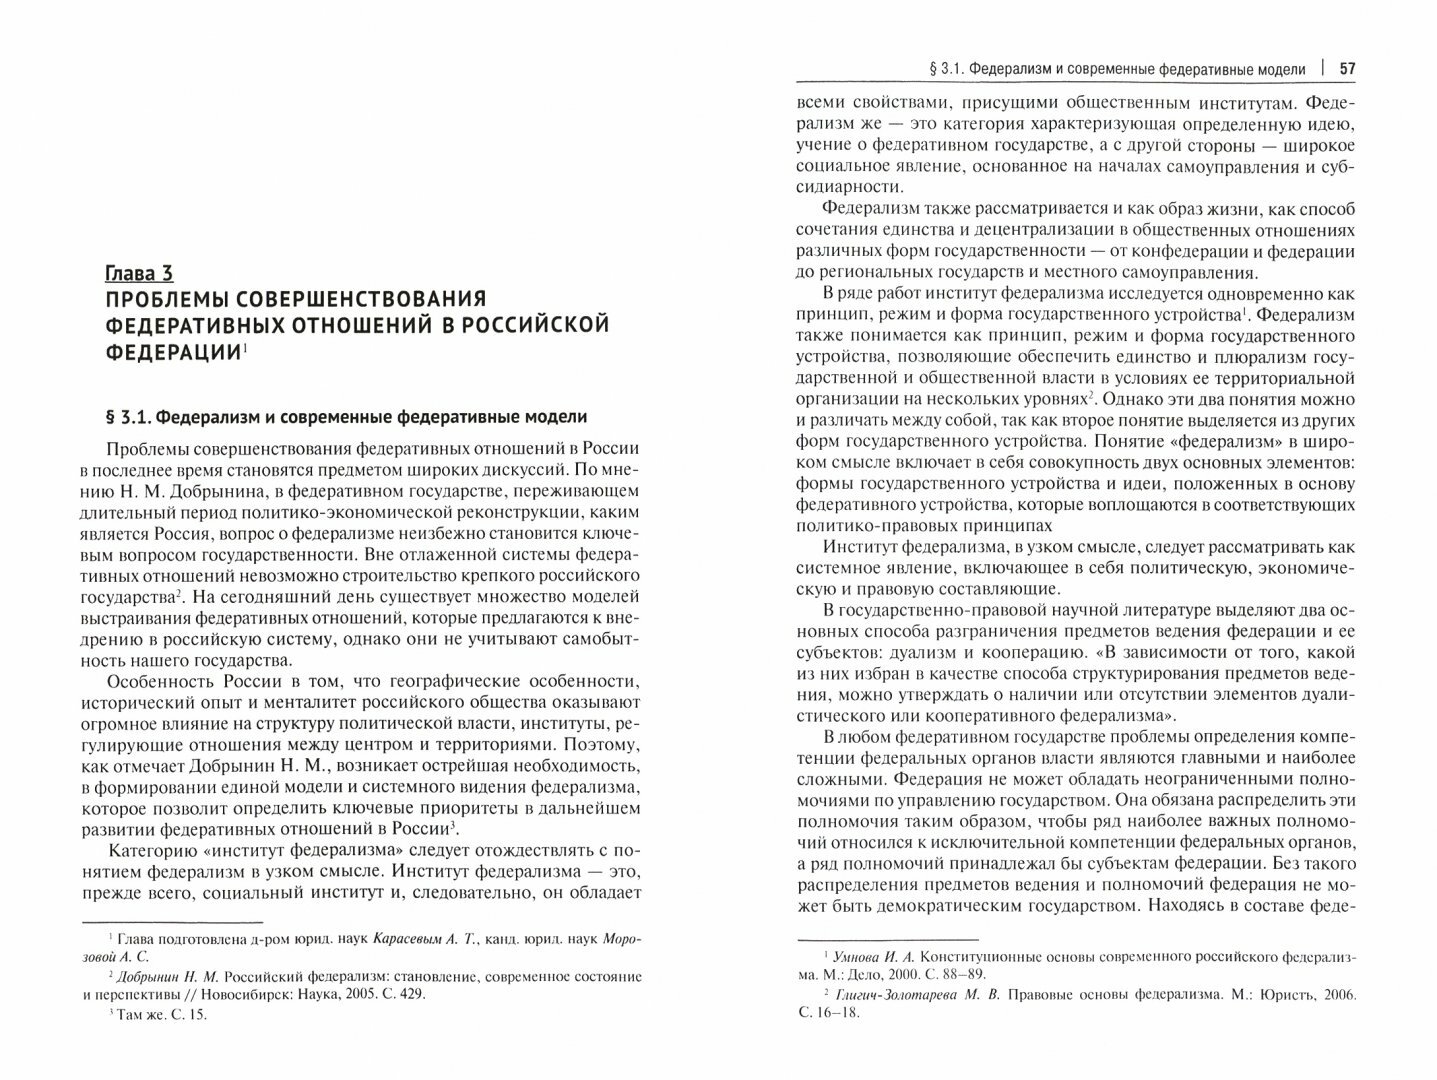 Современная модель государственной власти в РФ. Вопросы совершенствования и перспективы развития - фото №2